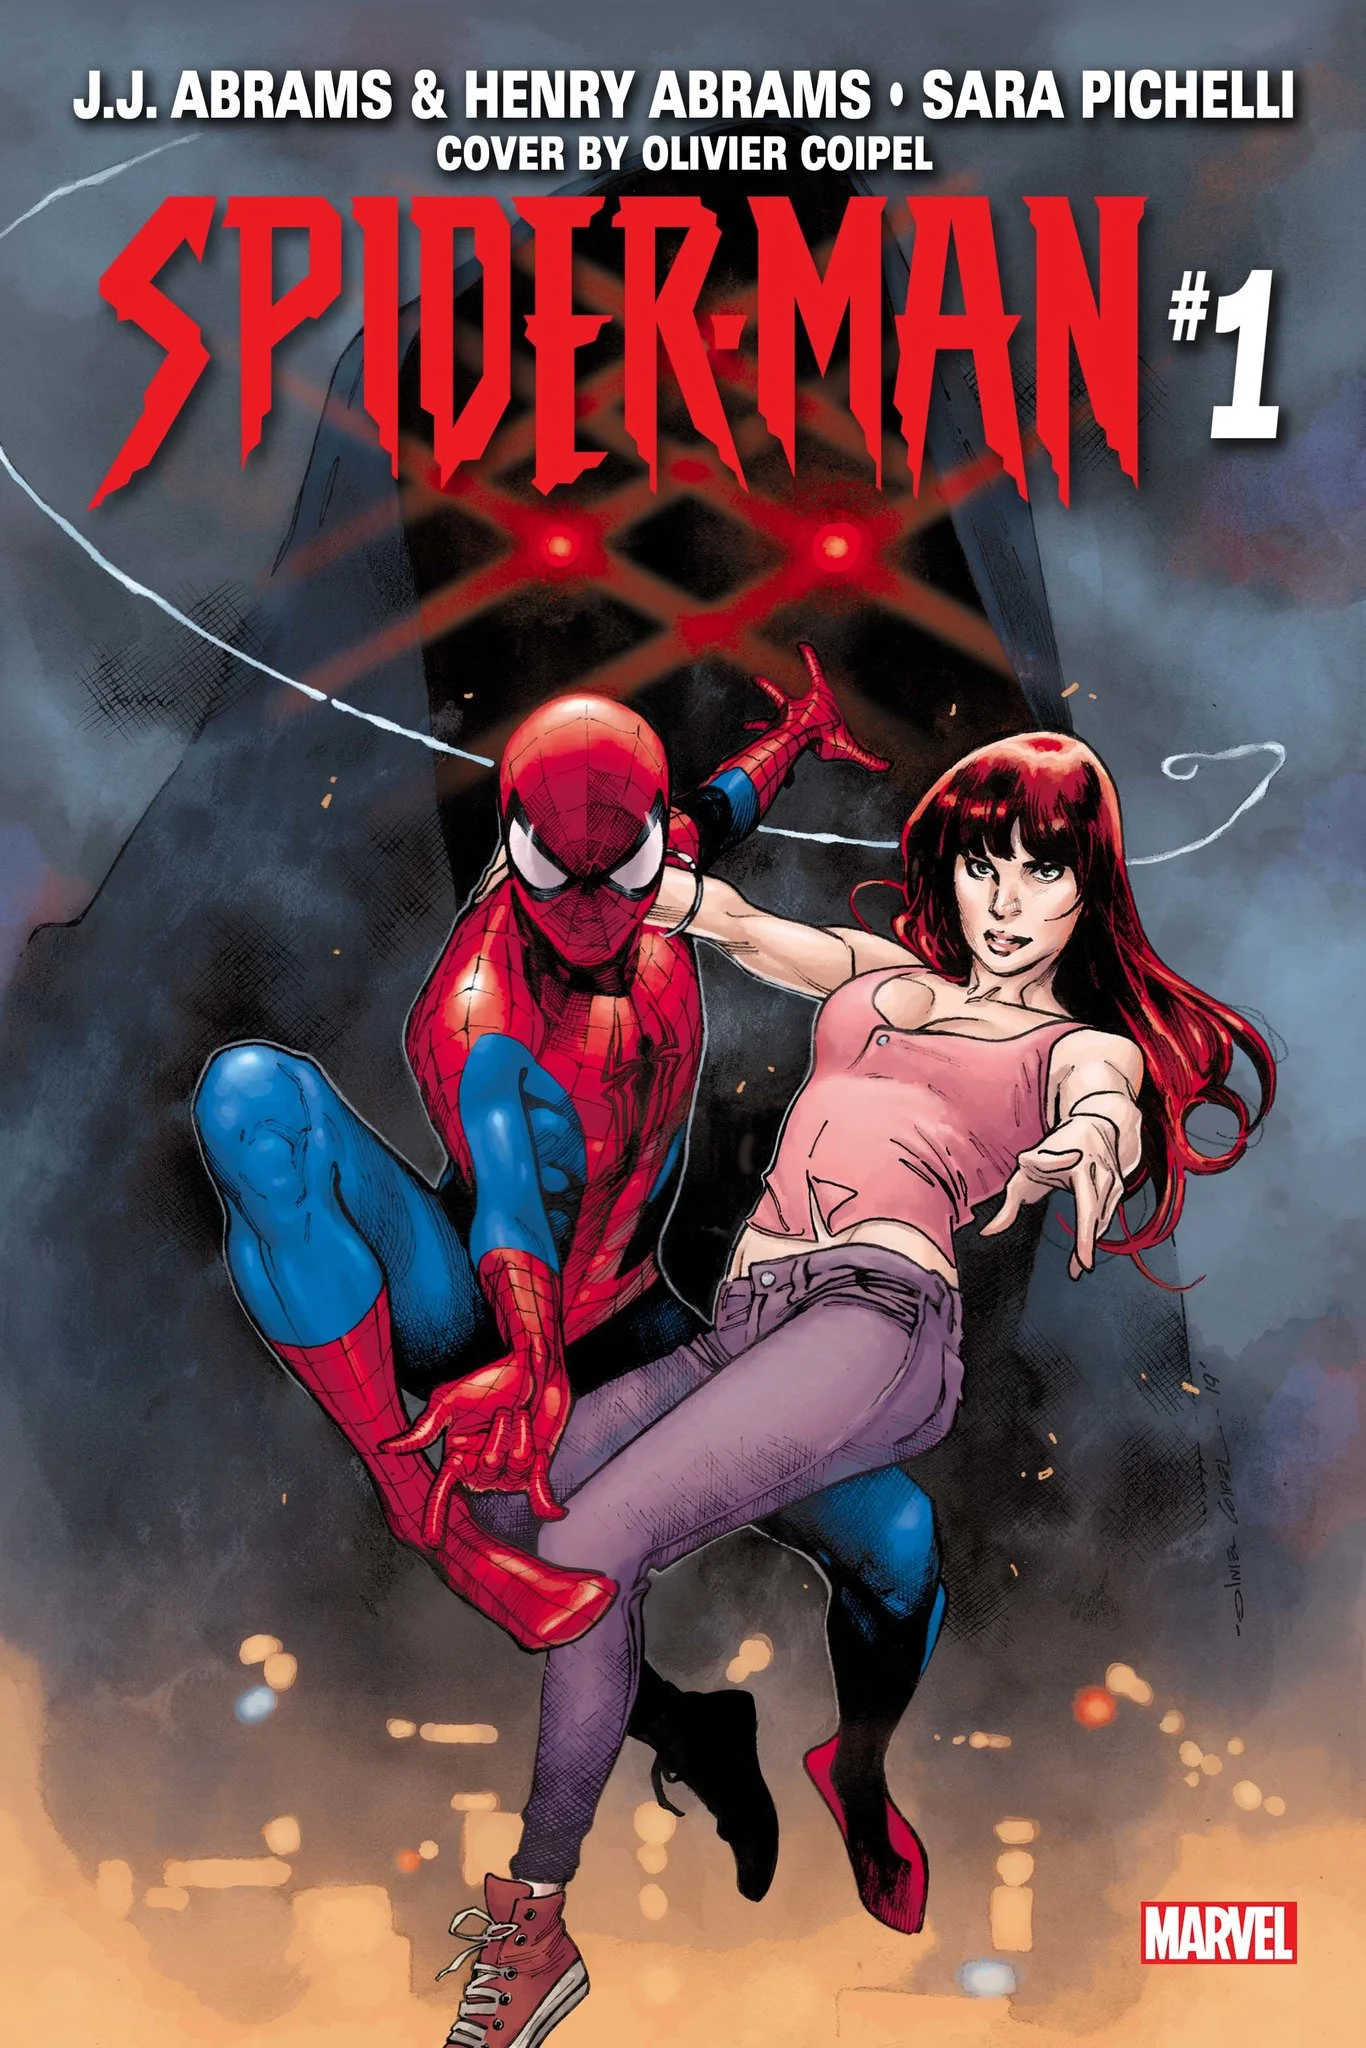 Загадочным тизером Marvel оказался комикс про Человека-паука от Джей Джей Абрамса и его сына - фото 2